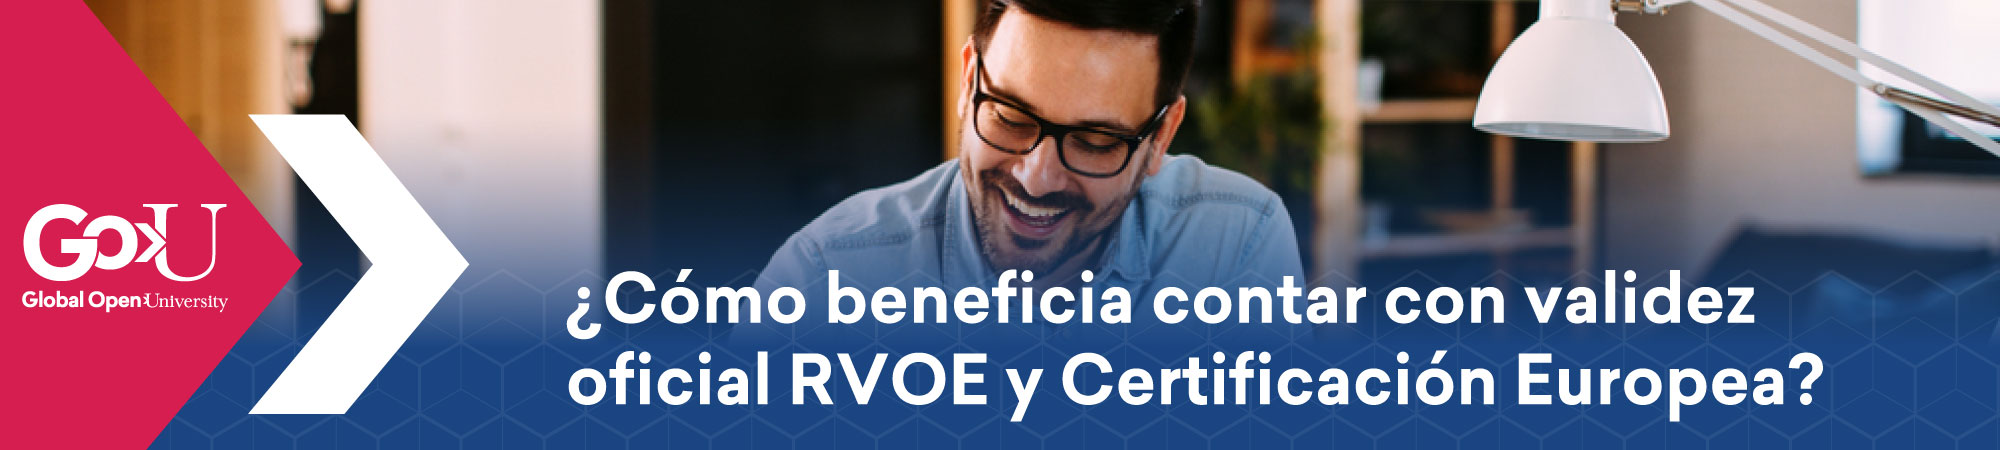 ¿Cómo beneficia contar con validez oficial RVOE y Certificación Europea?